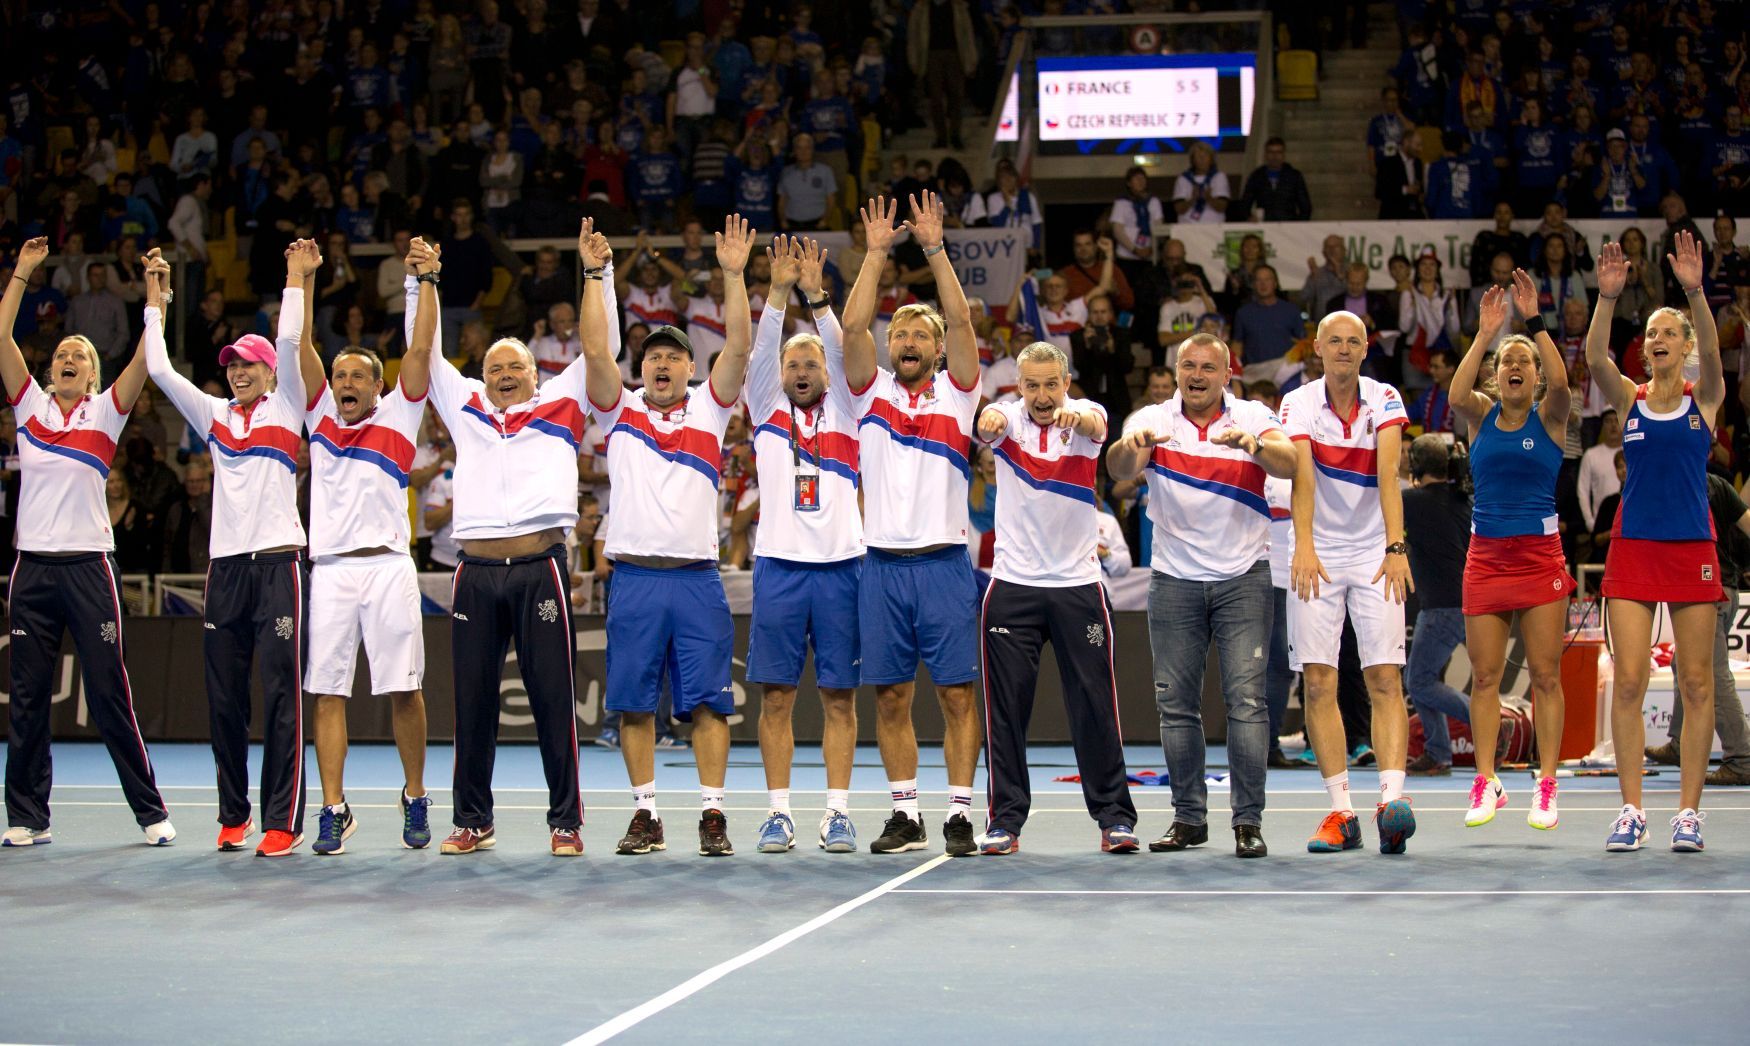 Češky se radují z vítězství ve Fed Cupu 2016